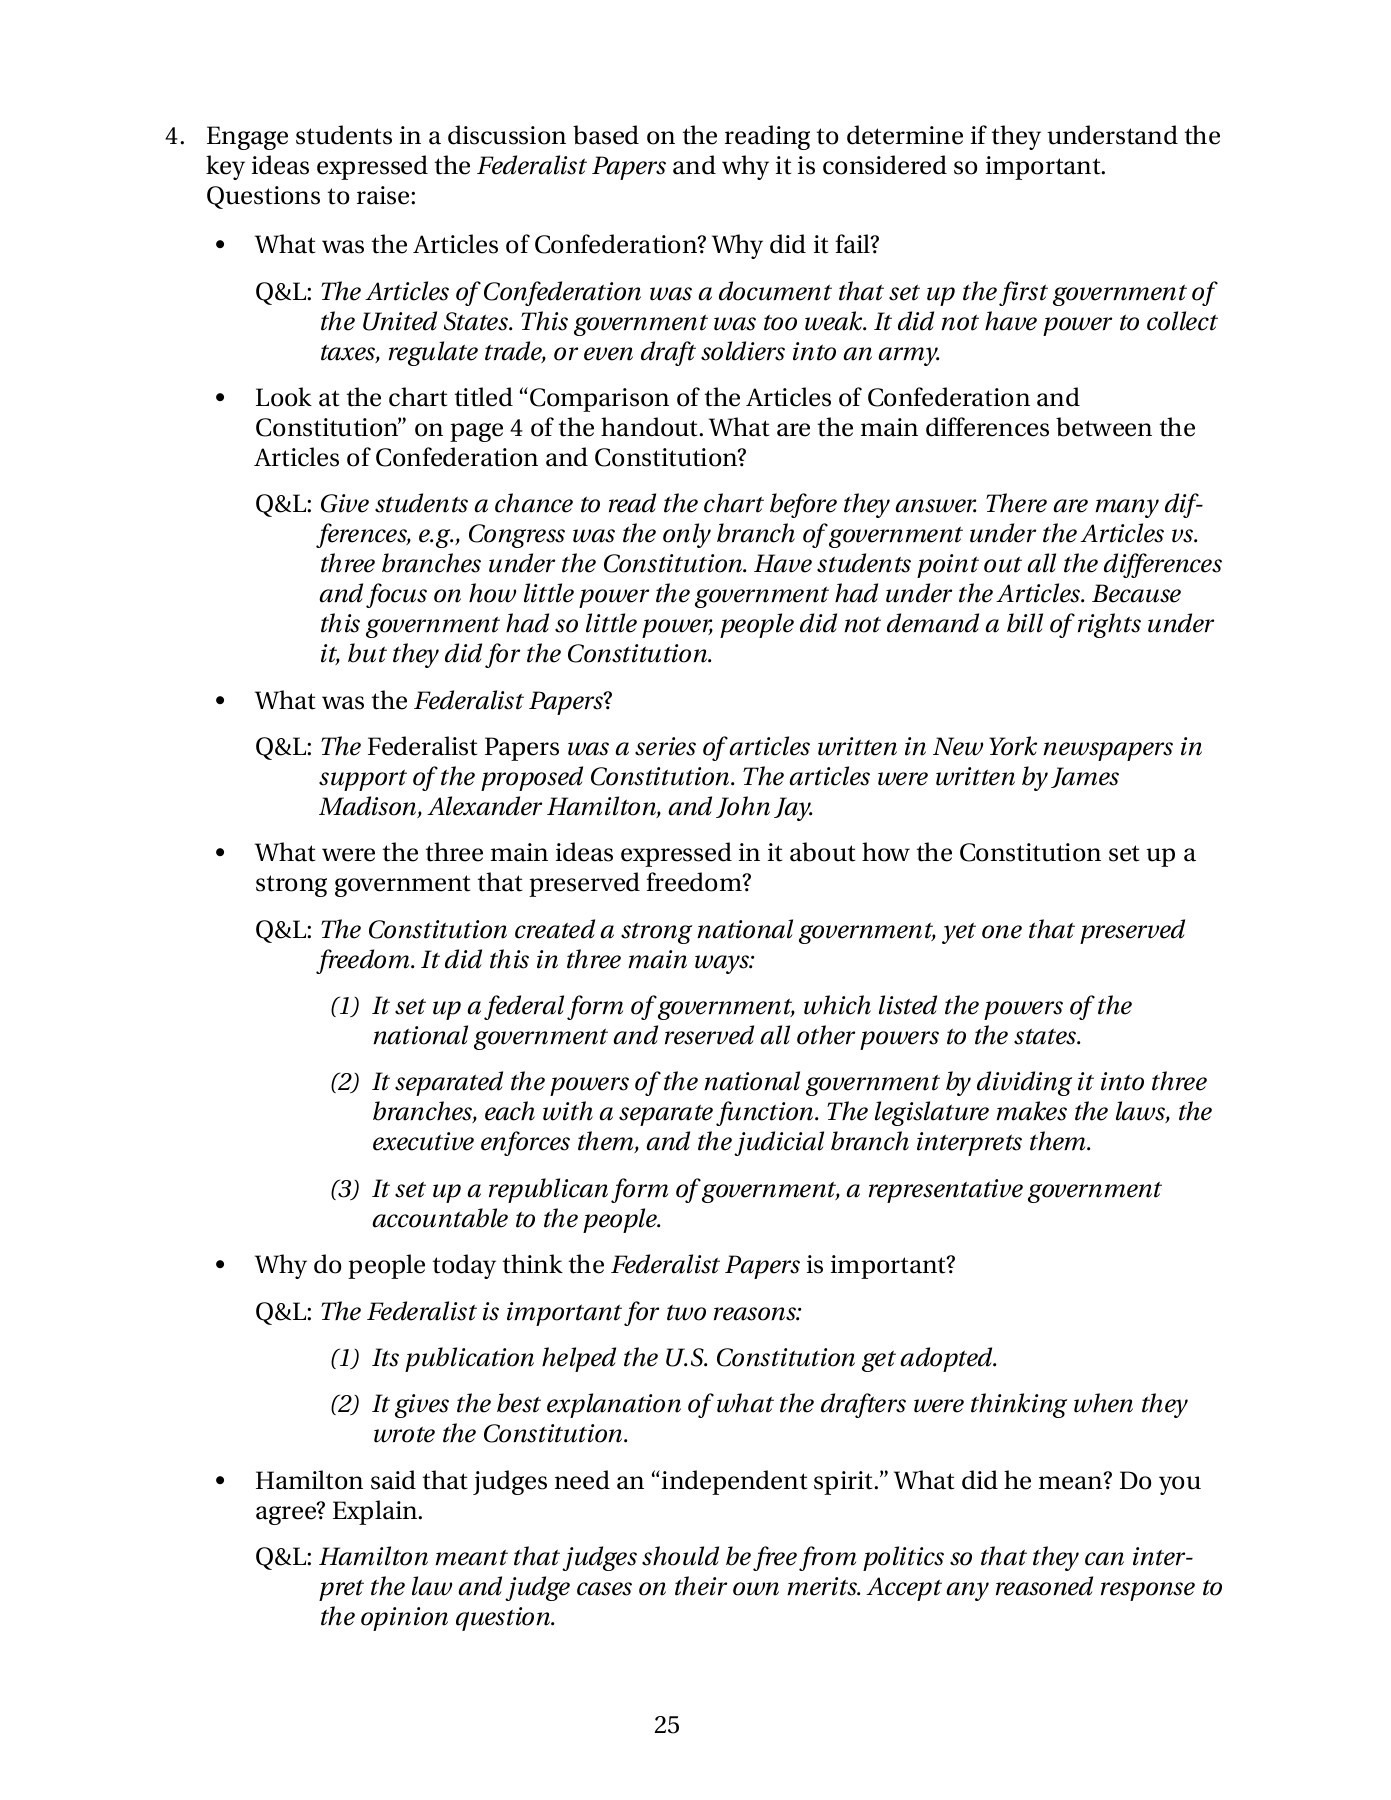 The Federalist Debate Worksheet Answers db excel com